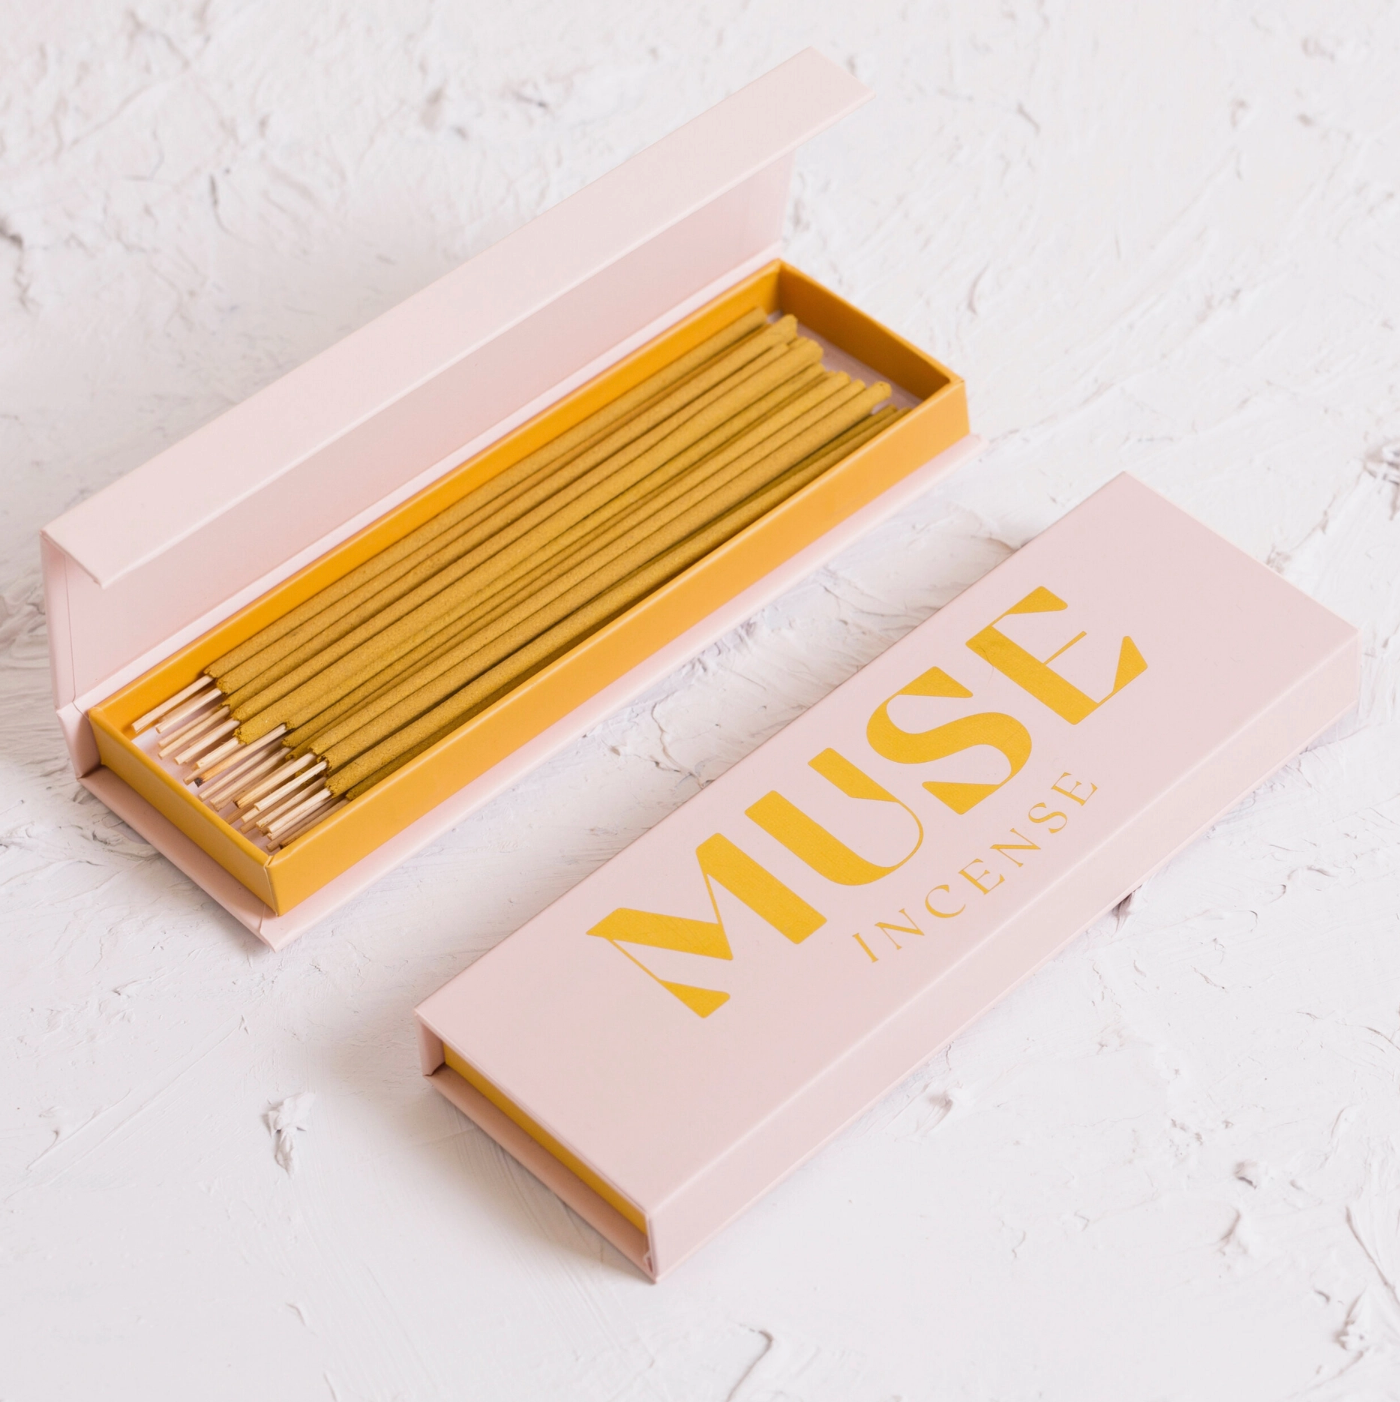 Muse Natural Incense Box in Ylang Ylang